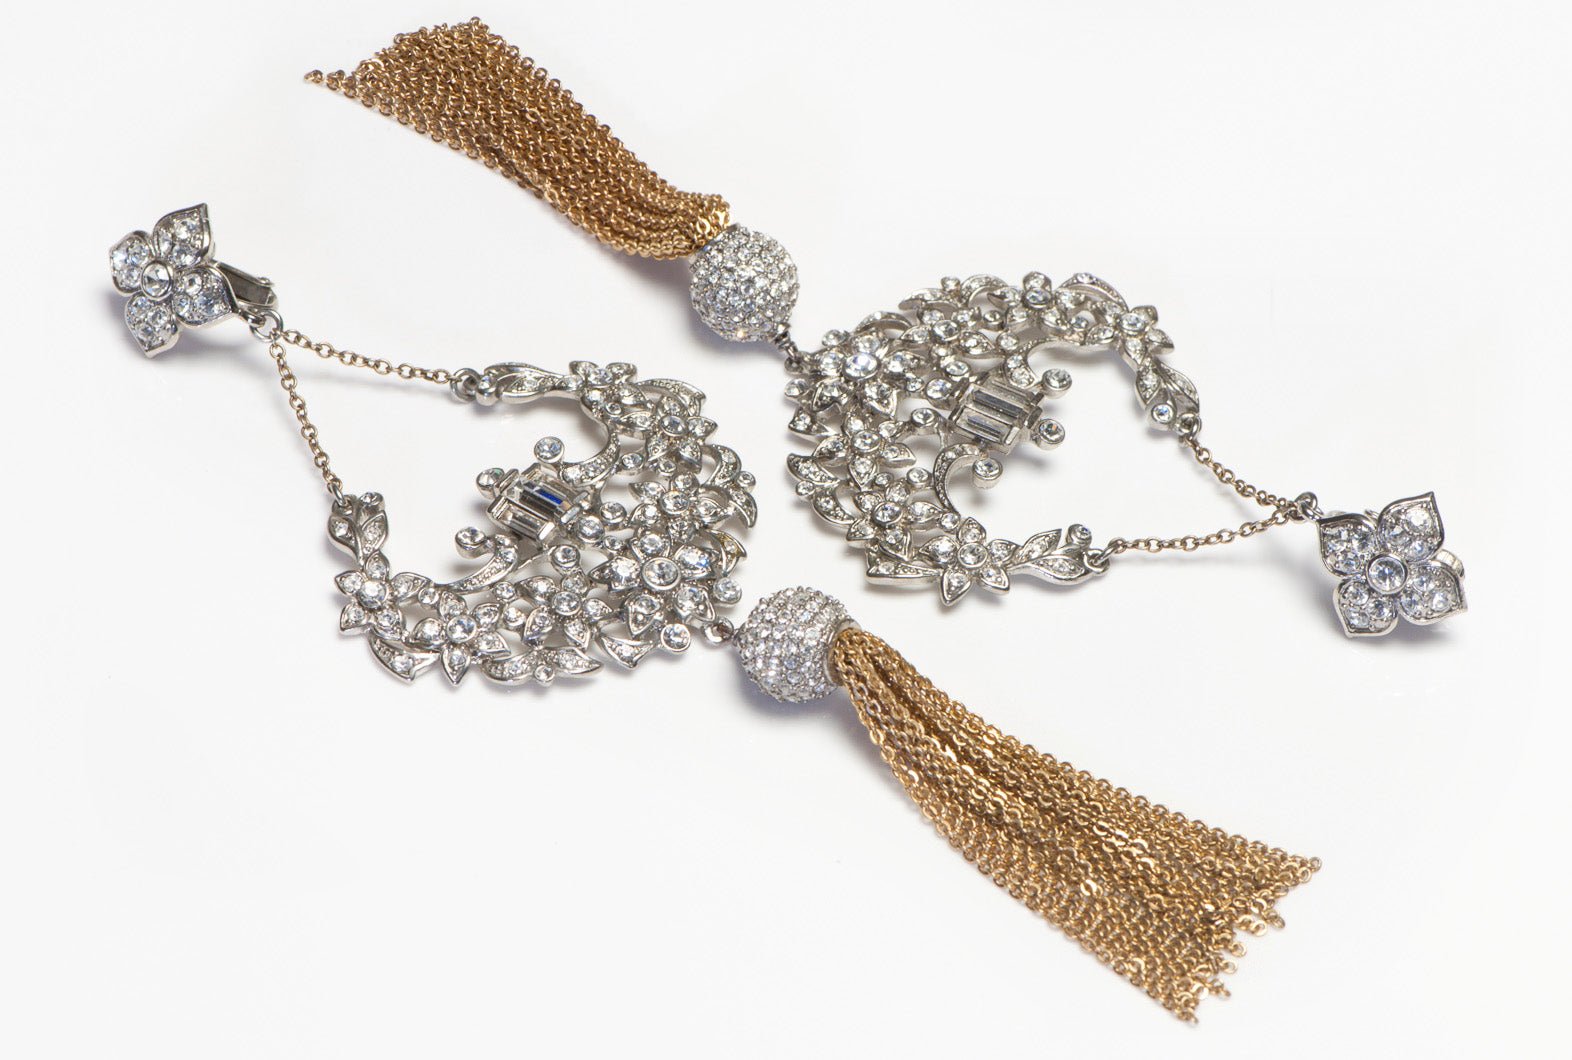 Vintage Carolee Long Crystal Tassel Earrings